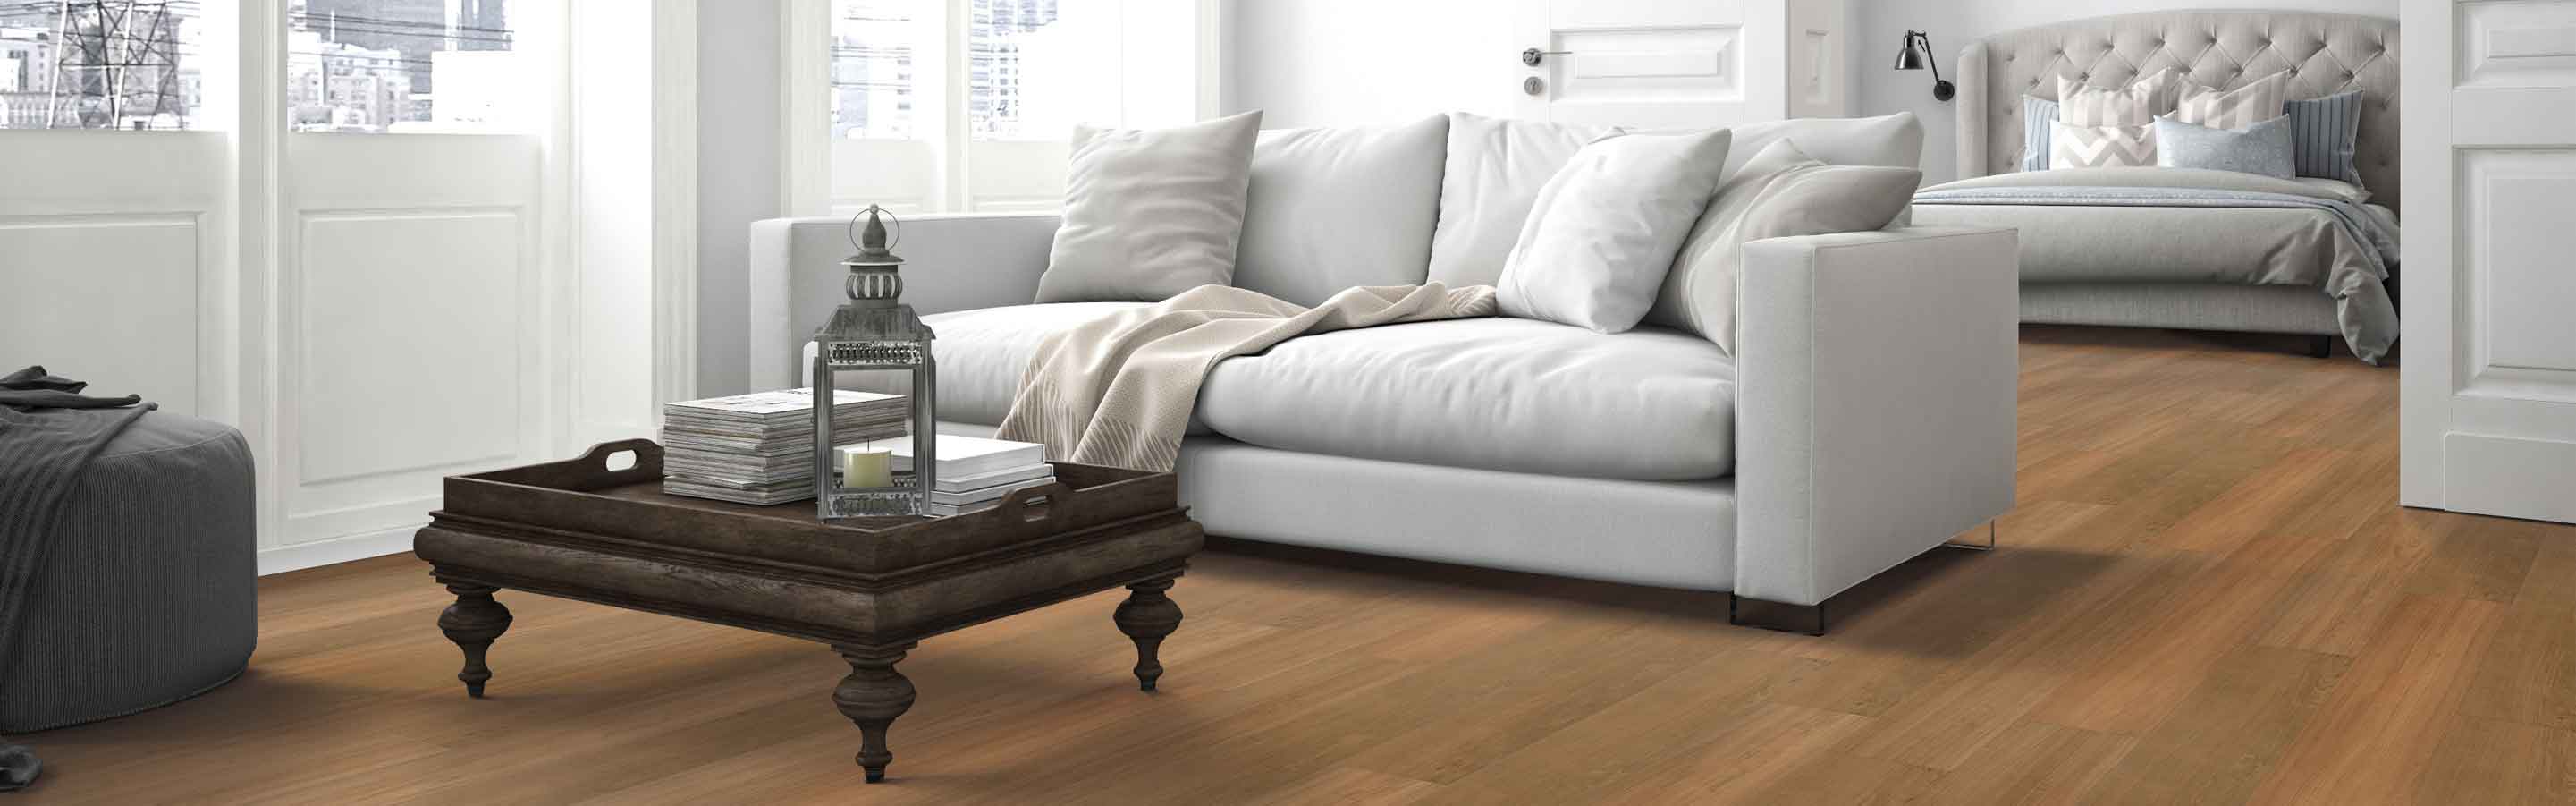 wood look vinyl flooring in bedroom